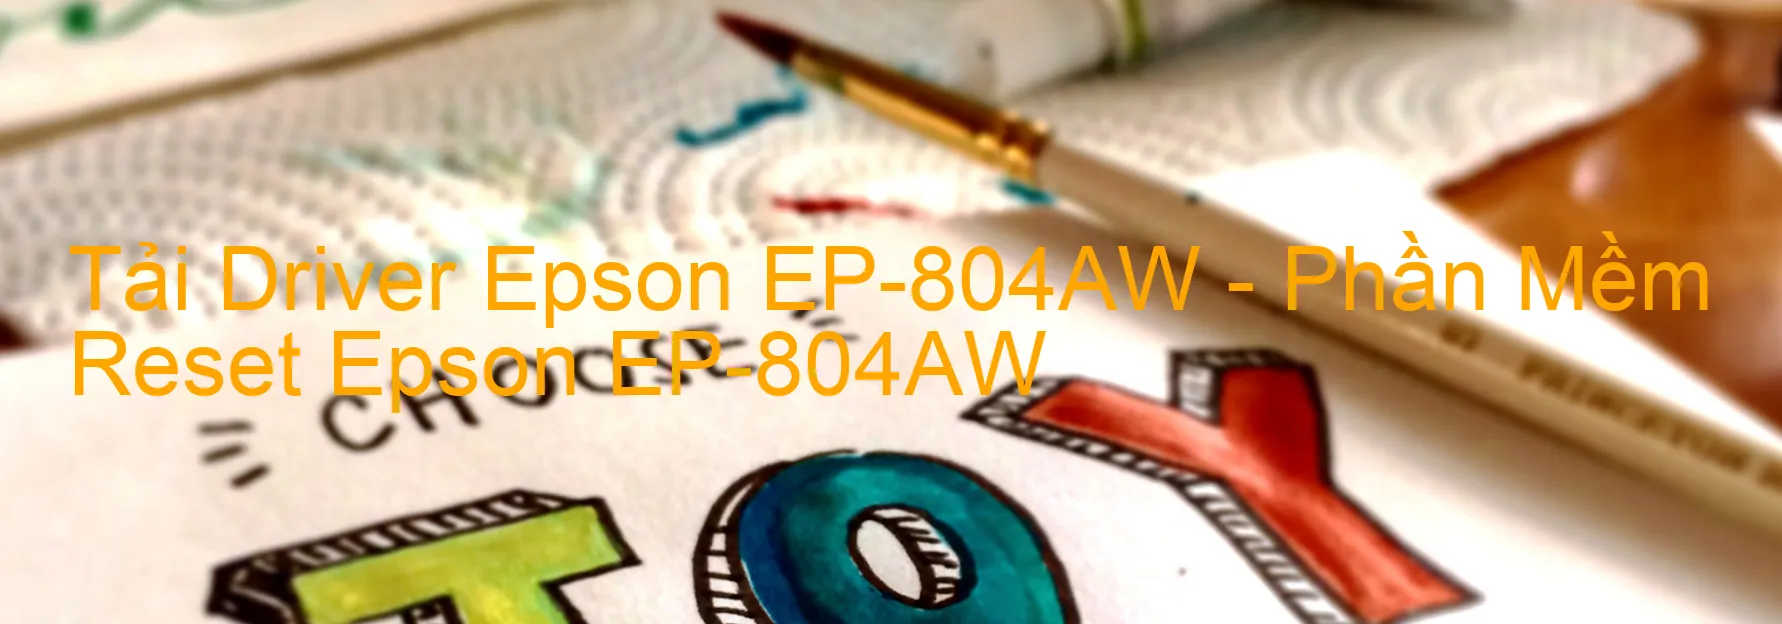 Driver Epson EP-804AW, Phần Mềm Reset Epson EP-804AW